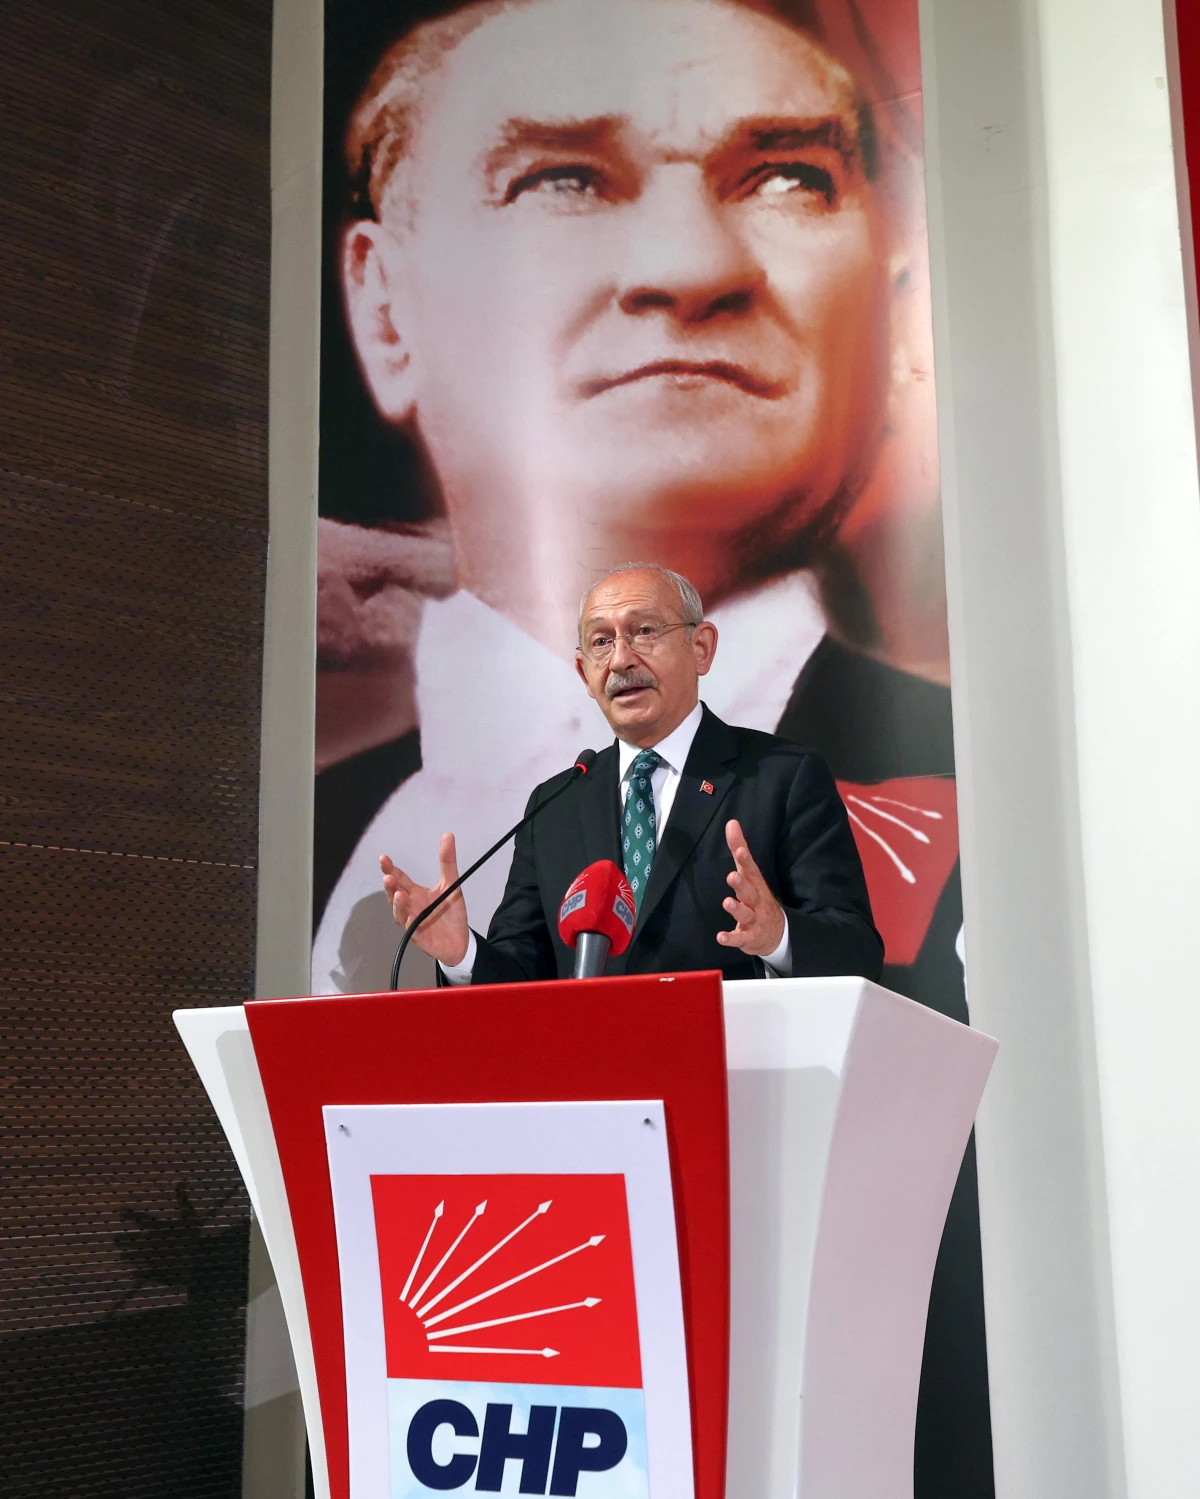 Kılıçdaroğlu: "Ben Size Birlikte Yaşamayı, Herkesin İnancına, Kimliğine, Yaşam Tarzına Saygı Göstermeyi Temel Kural Edinmeyi Vaat Ediyorum"